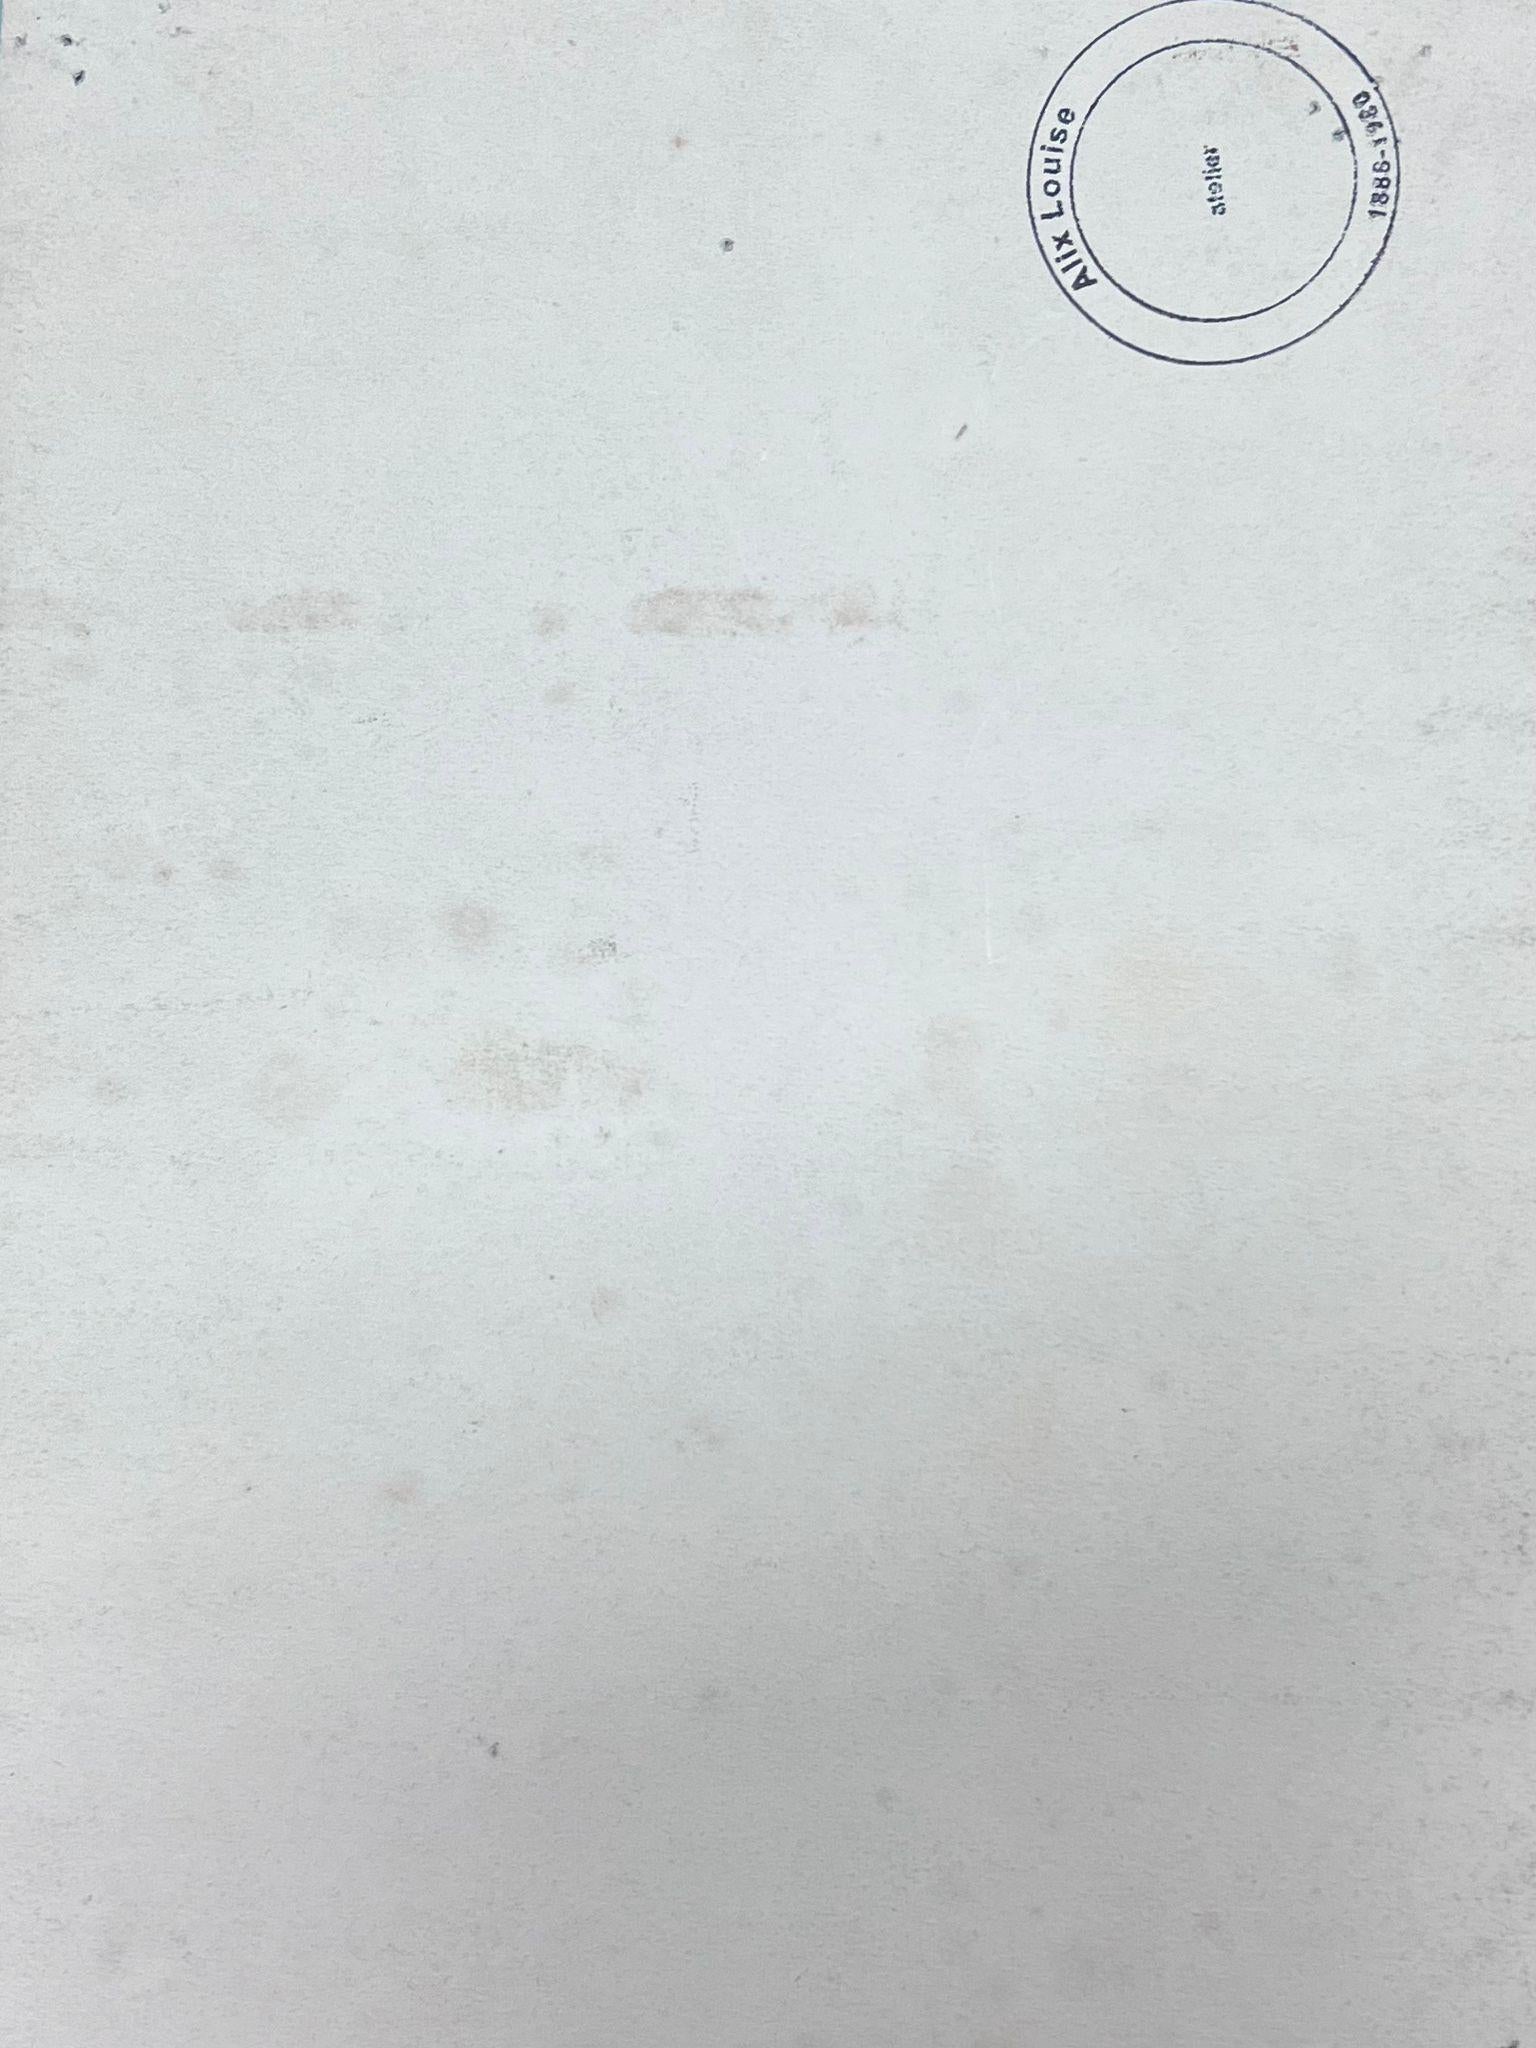 Figuren am Grabmal
signiert von Louise Alix (Französisch, 1888-1980) *siehe Anmerkungen unten
Provenienzstempel auf der Rückseite 
Aquarell auf Künstlerpapier, ungerahmt
Maße: 11 hoch x 8 Zoll breit
Zustand: insgesamt sehr gut und solide, ein paar